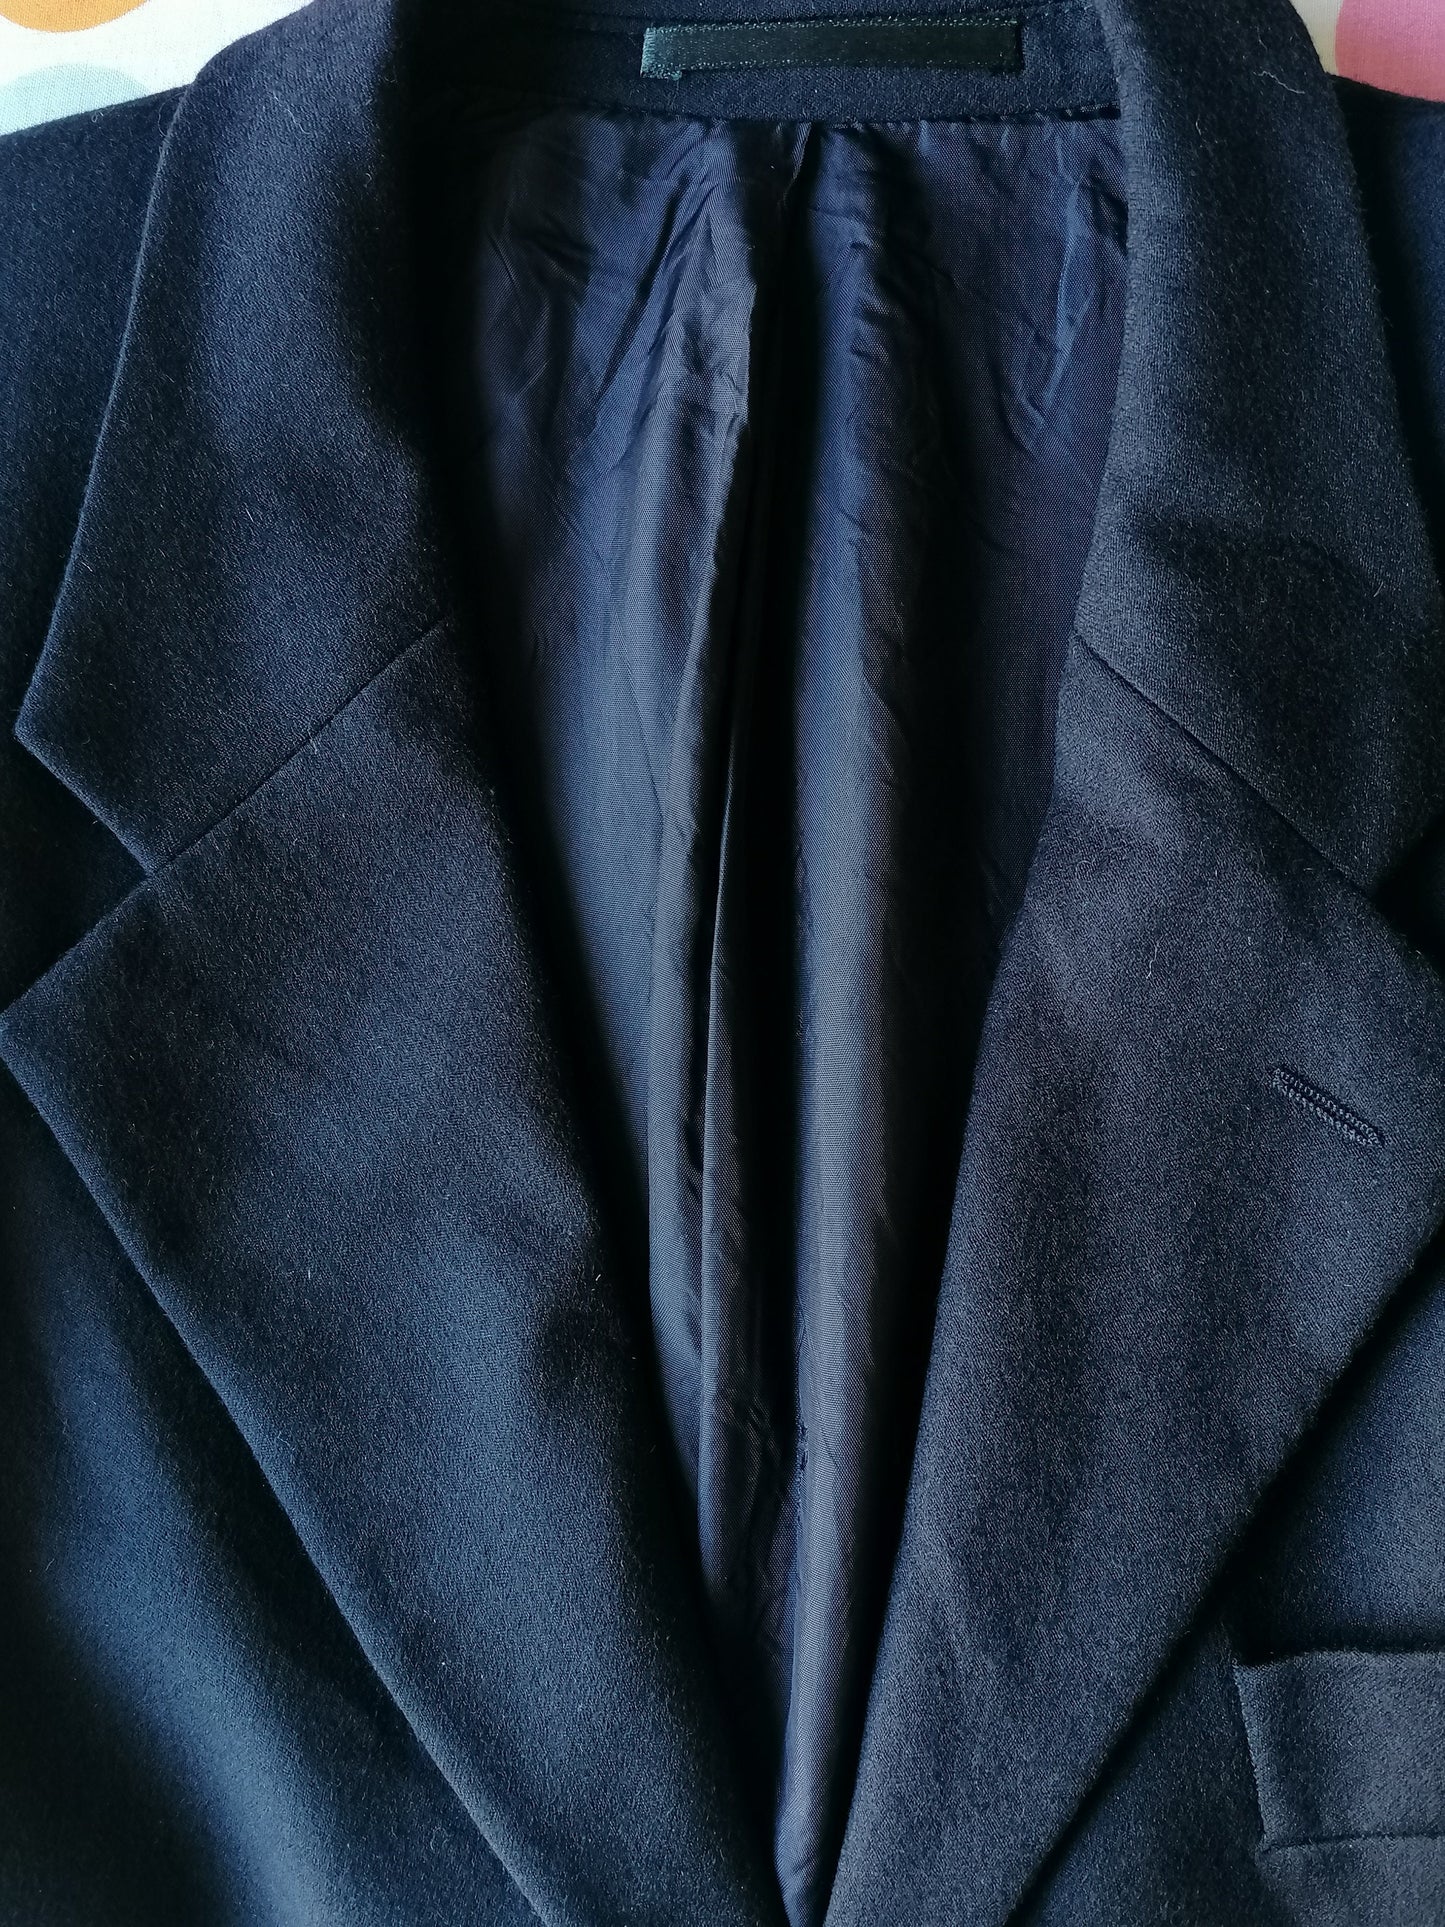 Chaqueta de lana vintage de la vendimia. Color azul oscuro. Tamaño 50 / M.